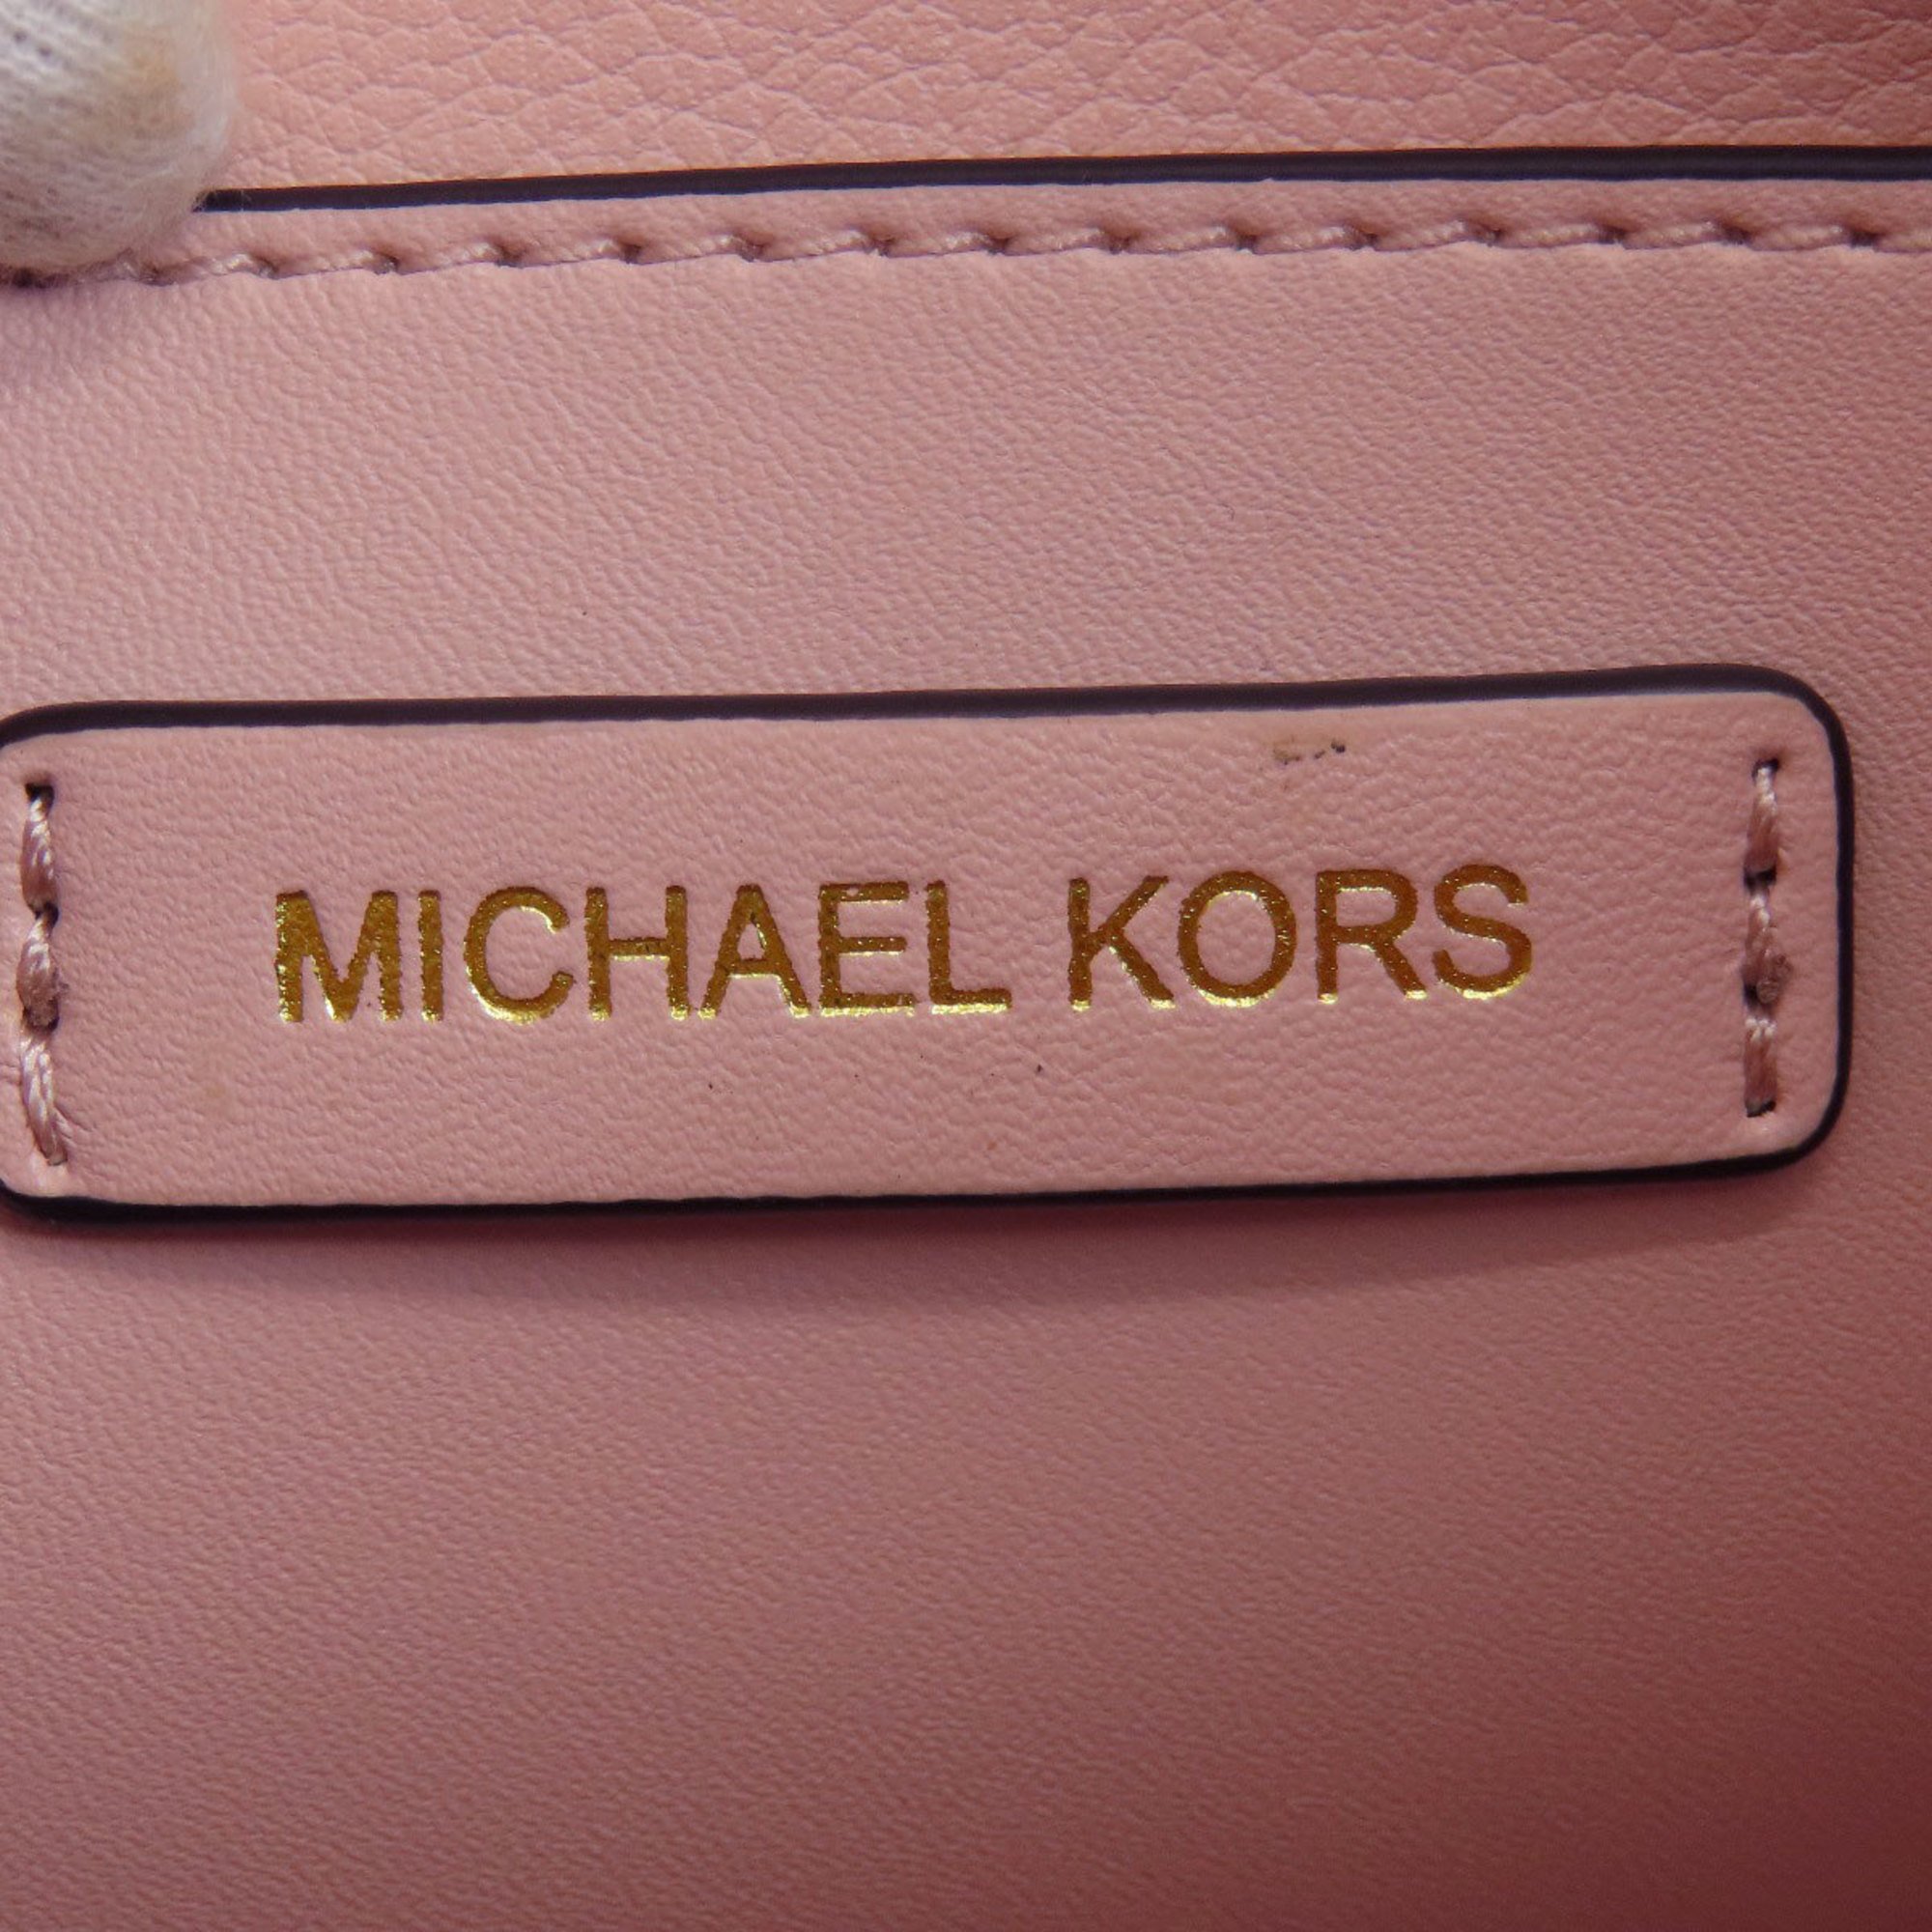 Michael Kors Emilia MK Signature Shoulder Bag PVC Women's